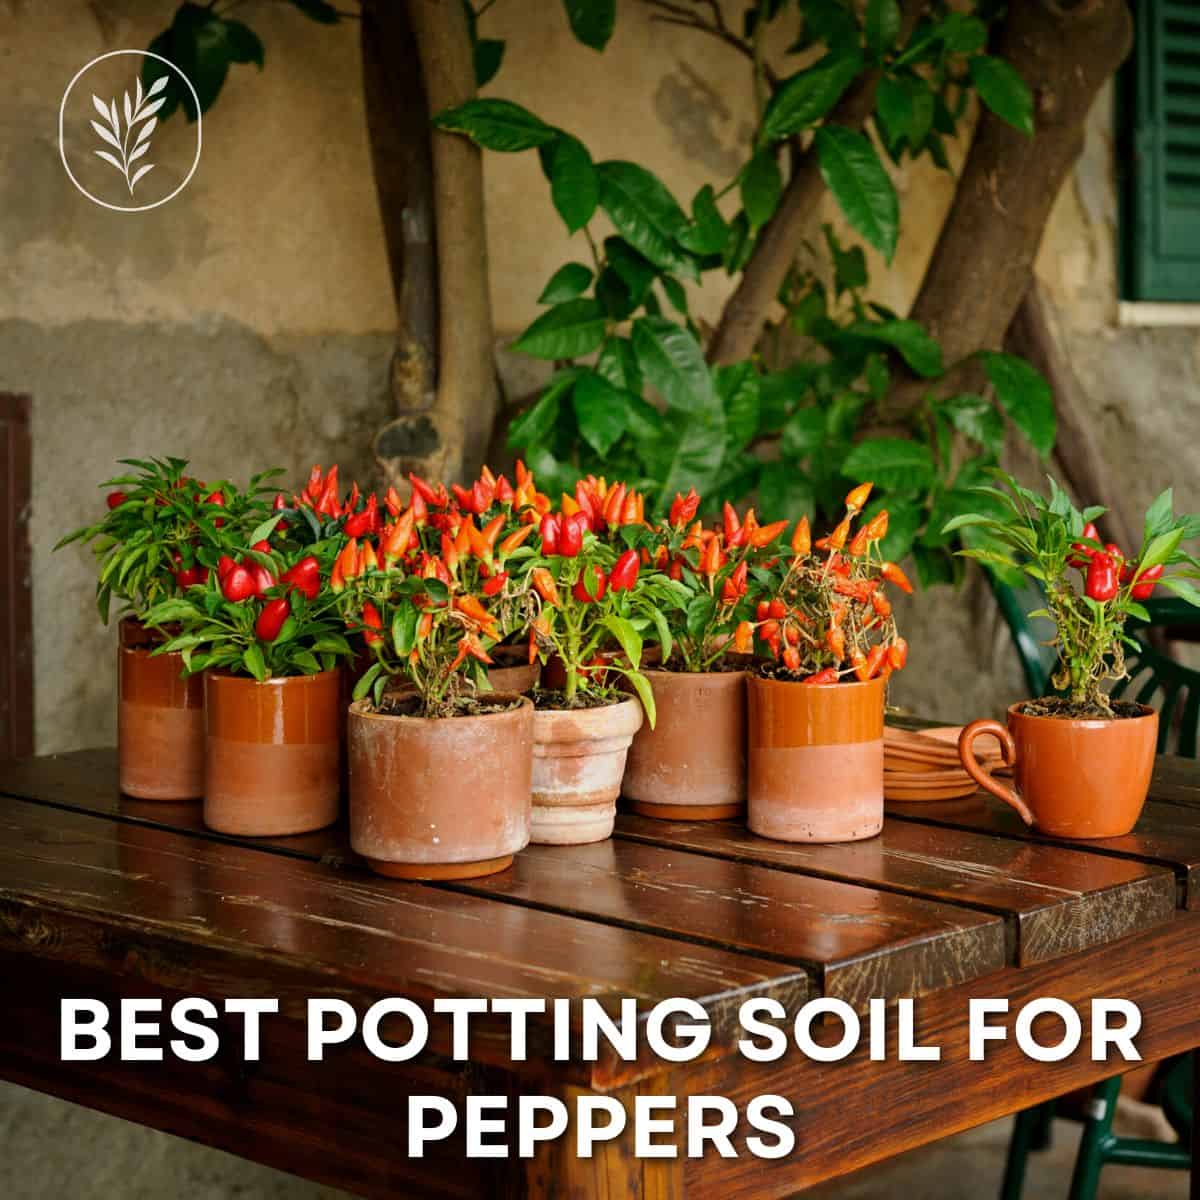 Best potting soil for peppers via @home4theharvest